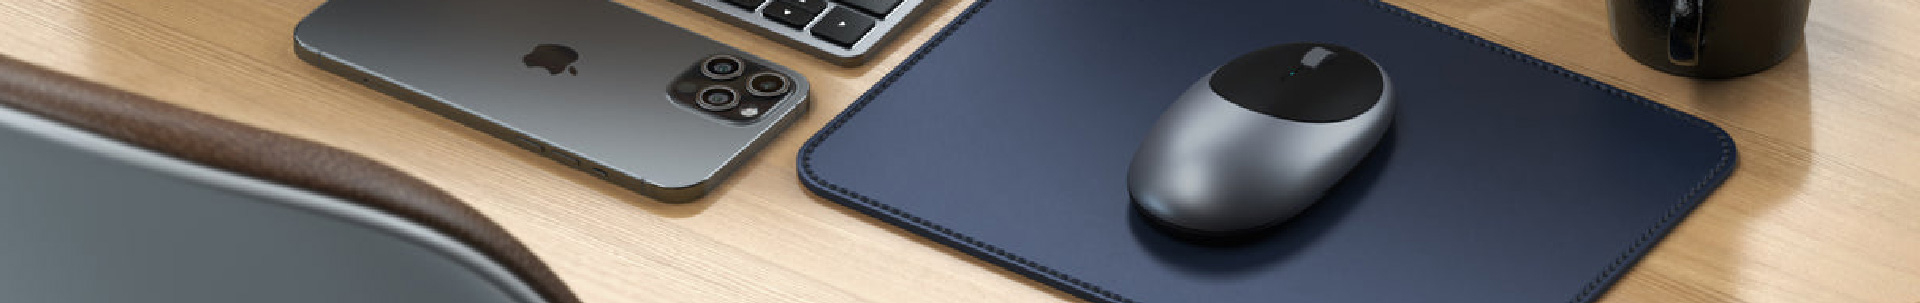 Souris Bluetooth Macbook et iMac Rechargeable USB C, Satechi M1